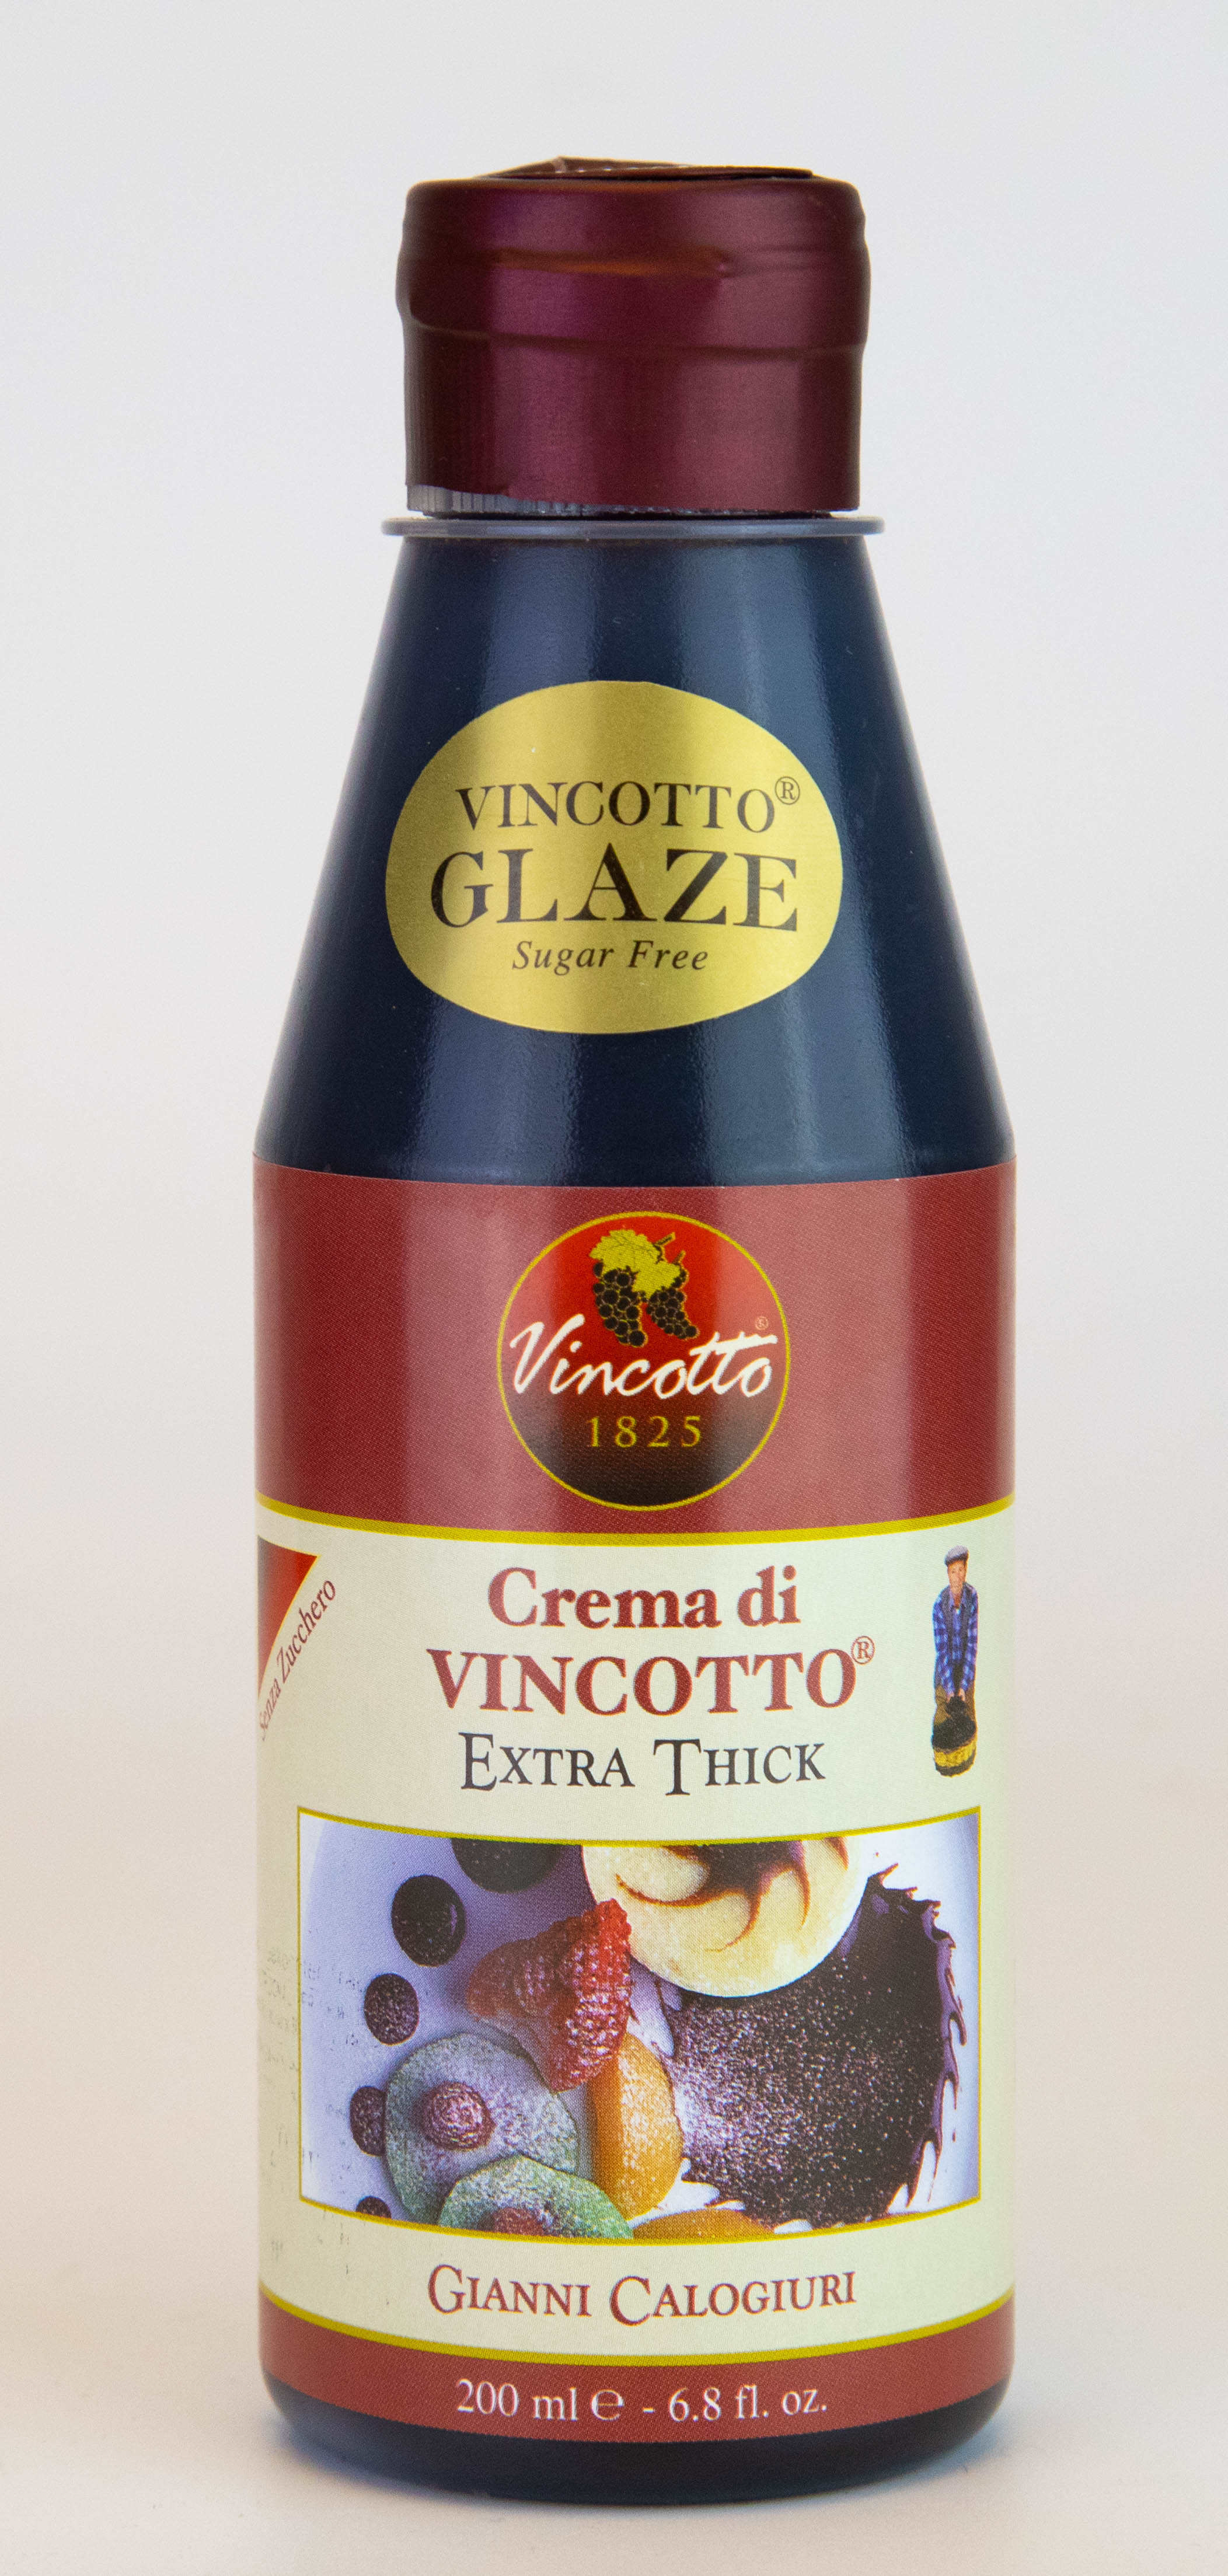 Crema de Vincotto original en botella de 200 ml.